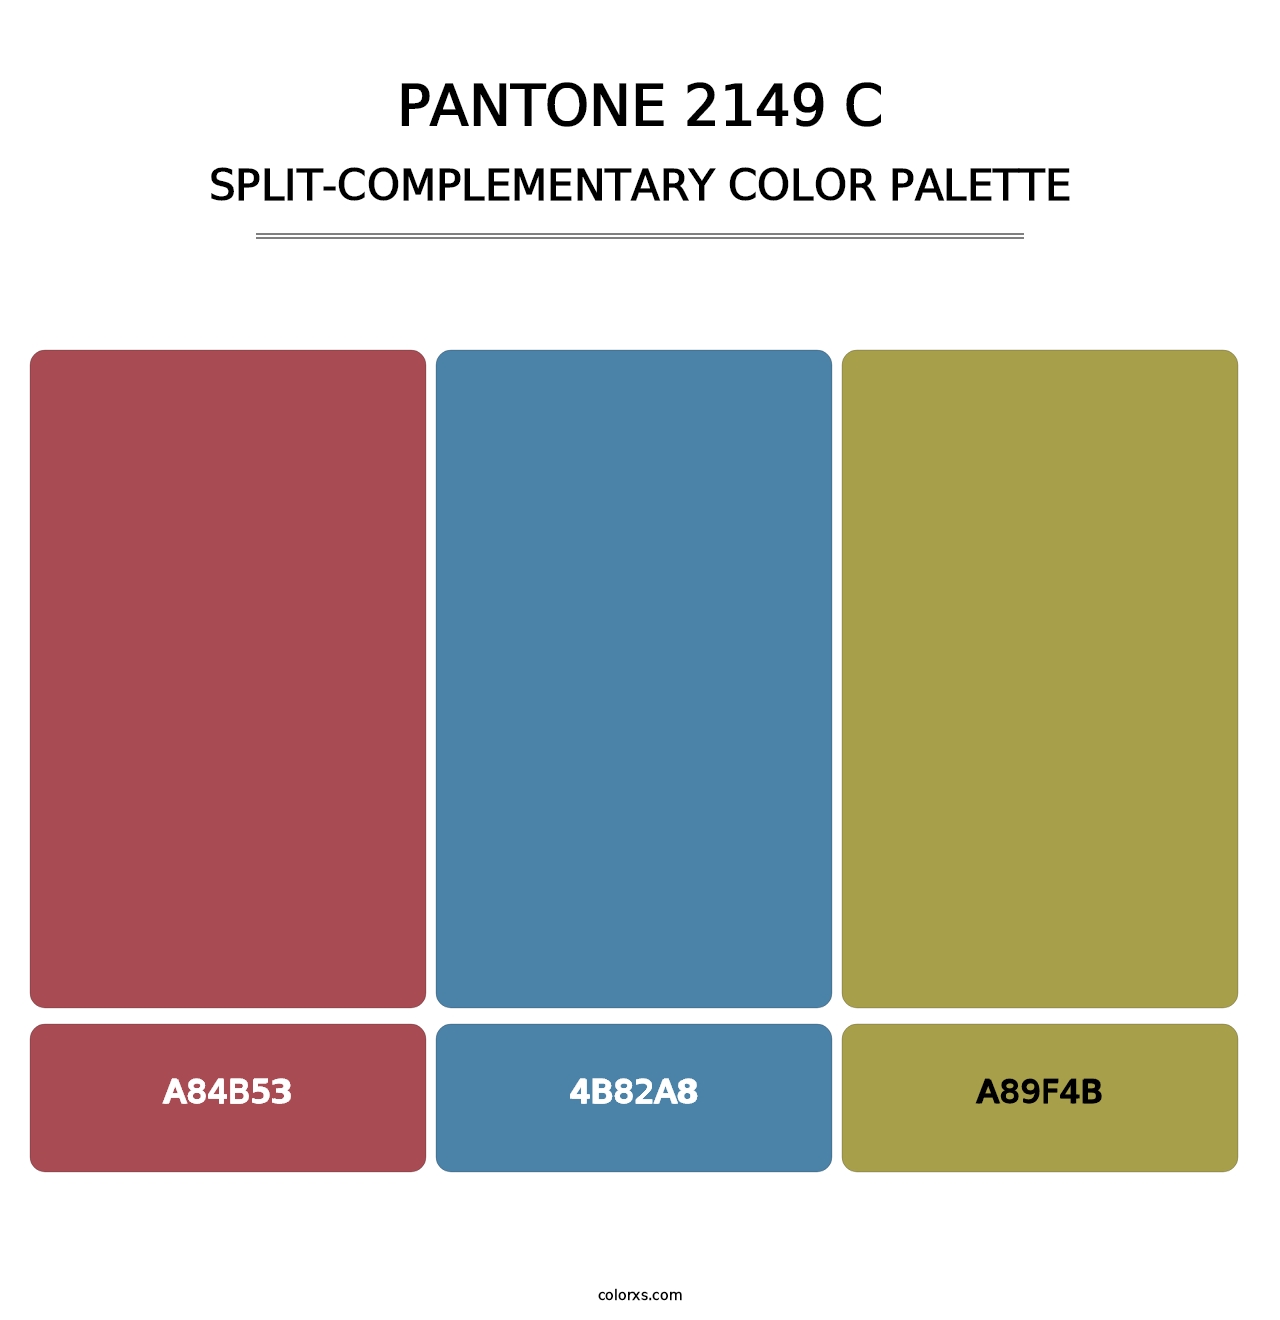 PANTONE 2149 C - Split-Complementary Color Palette